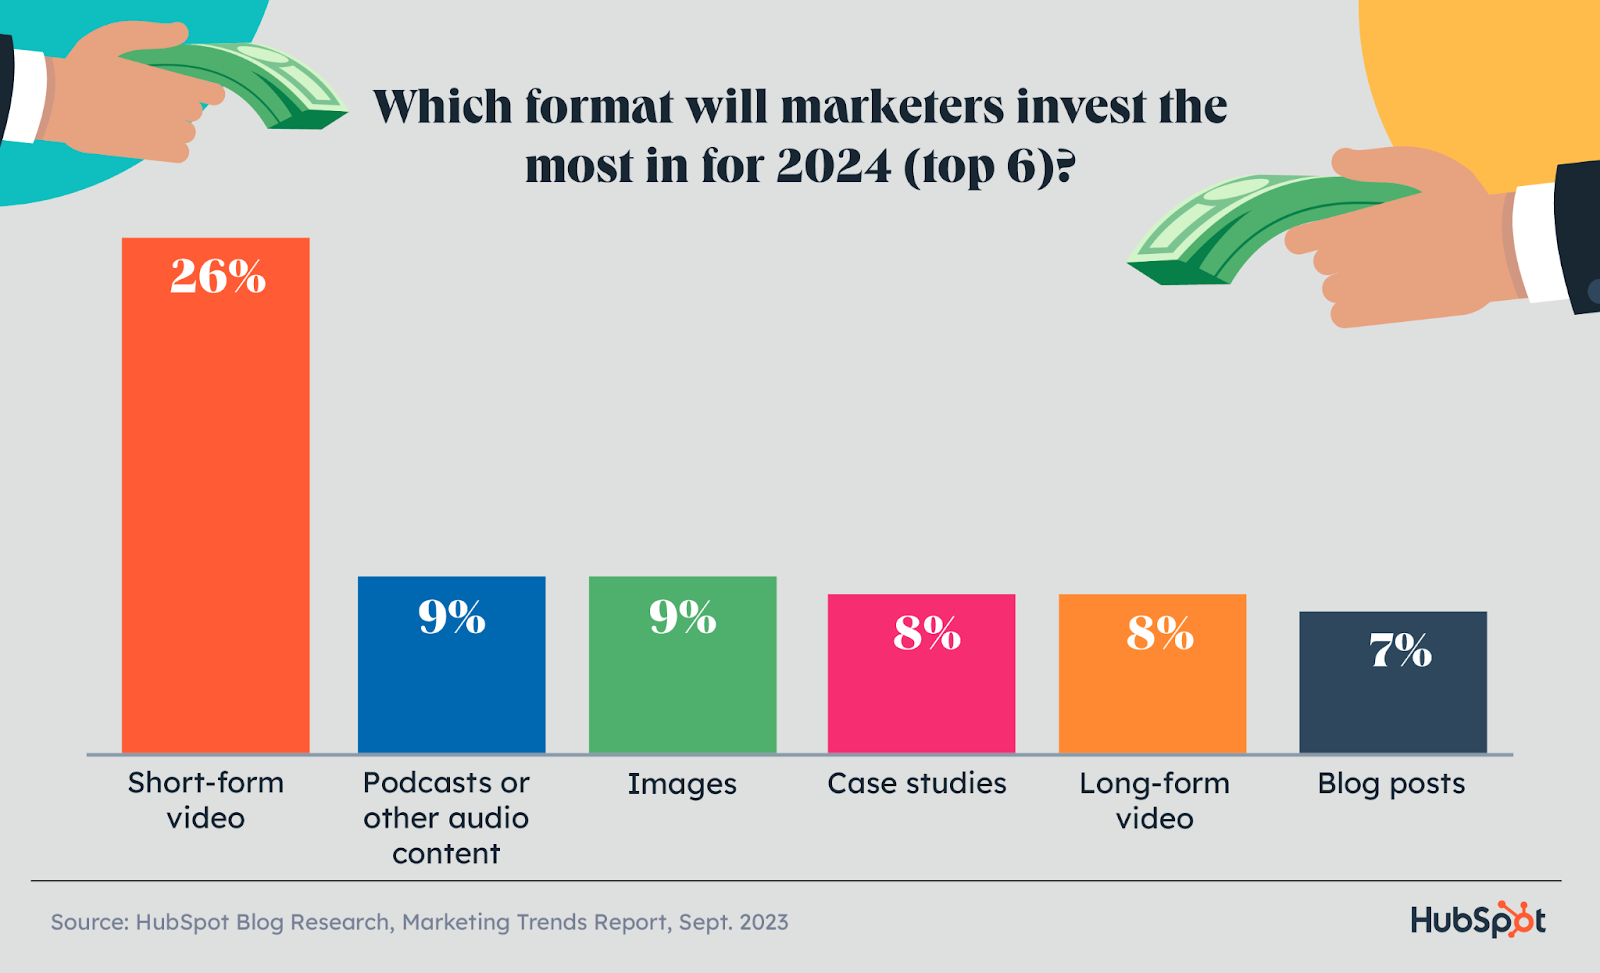 Los vídeos de formato corto recibirán la mayor inversión en marketing en comparación con otros tipos de contenido en 2024.